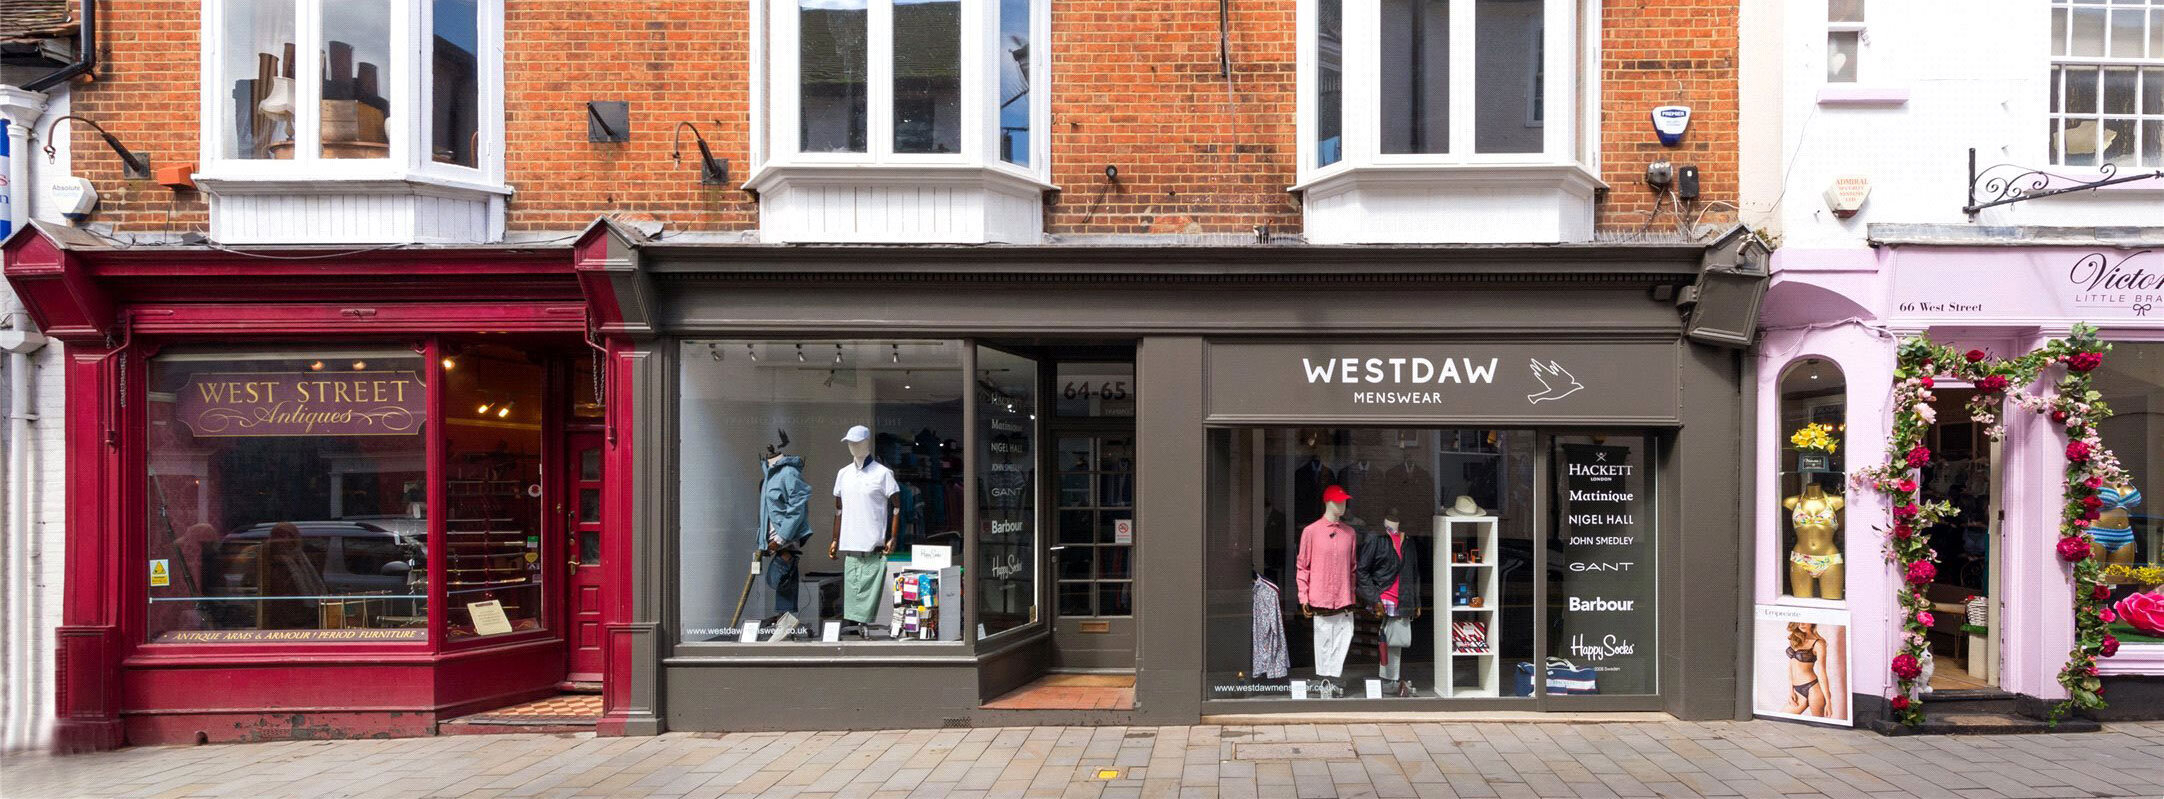 Westdaw-Menswear-Shop-Front.jpg